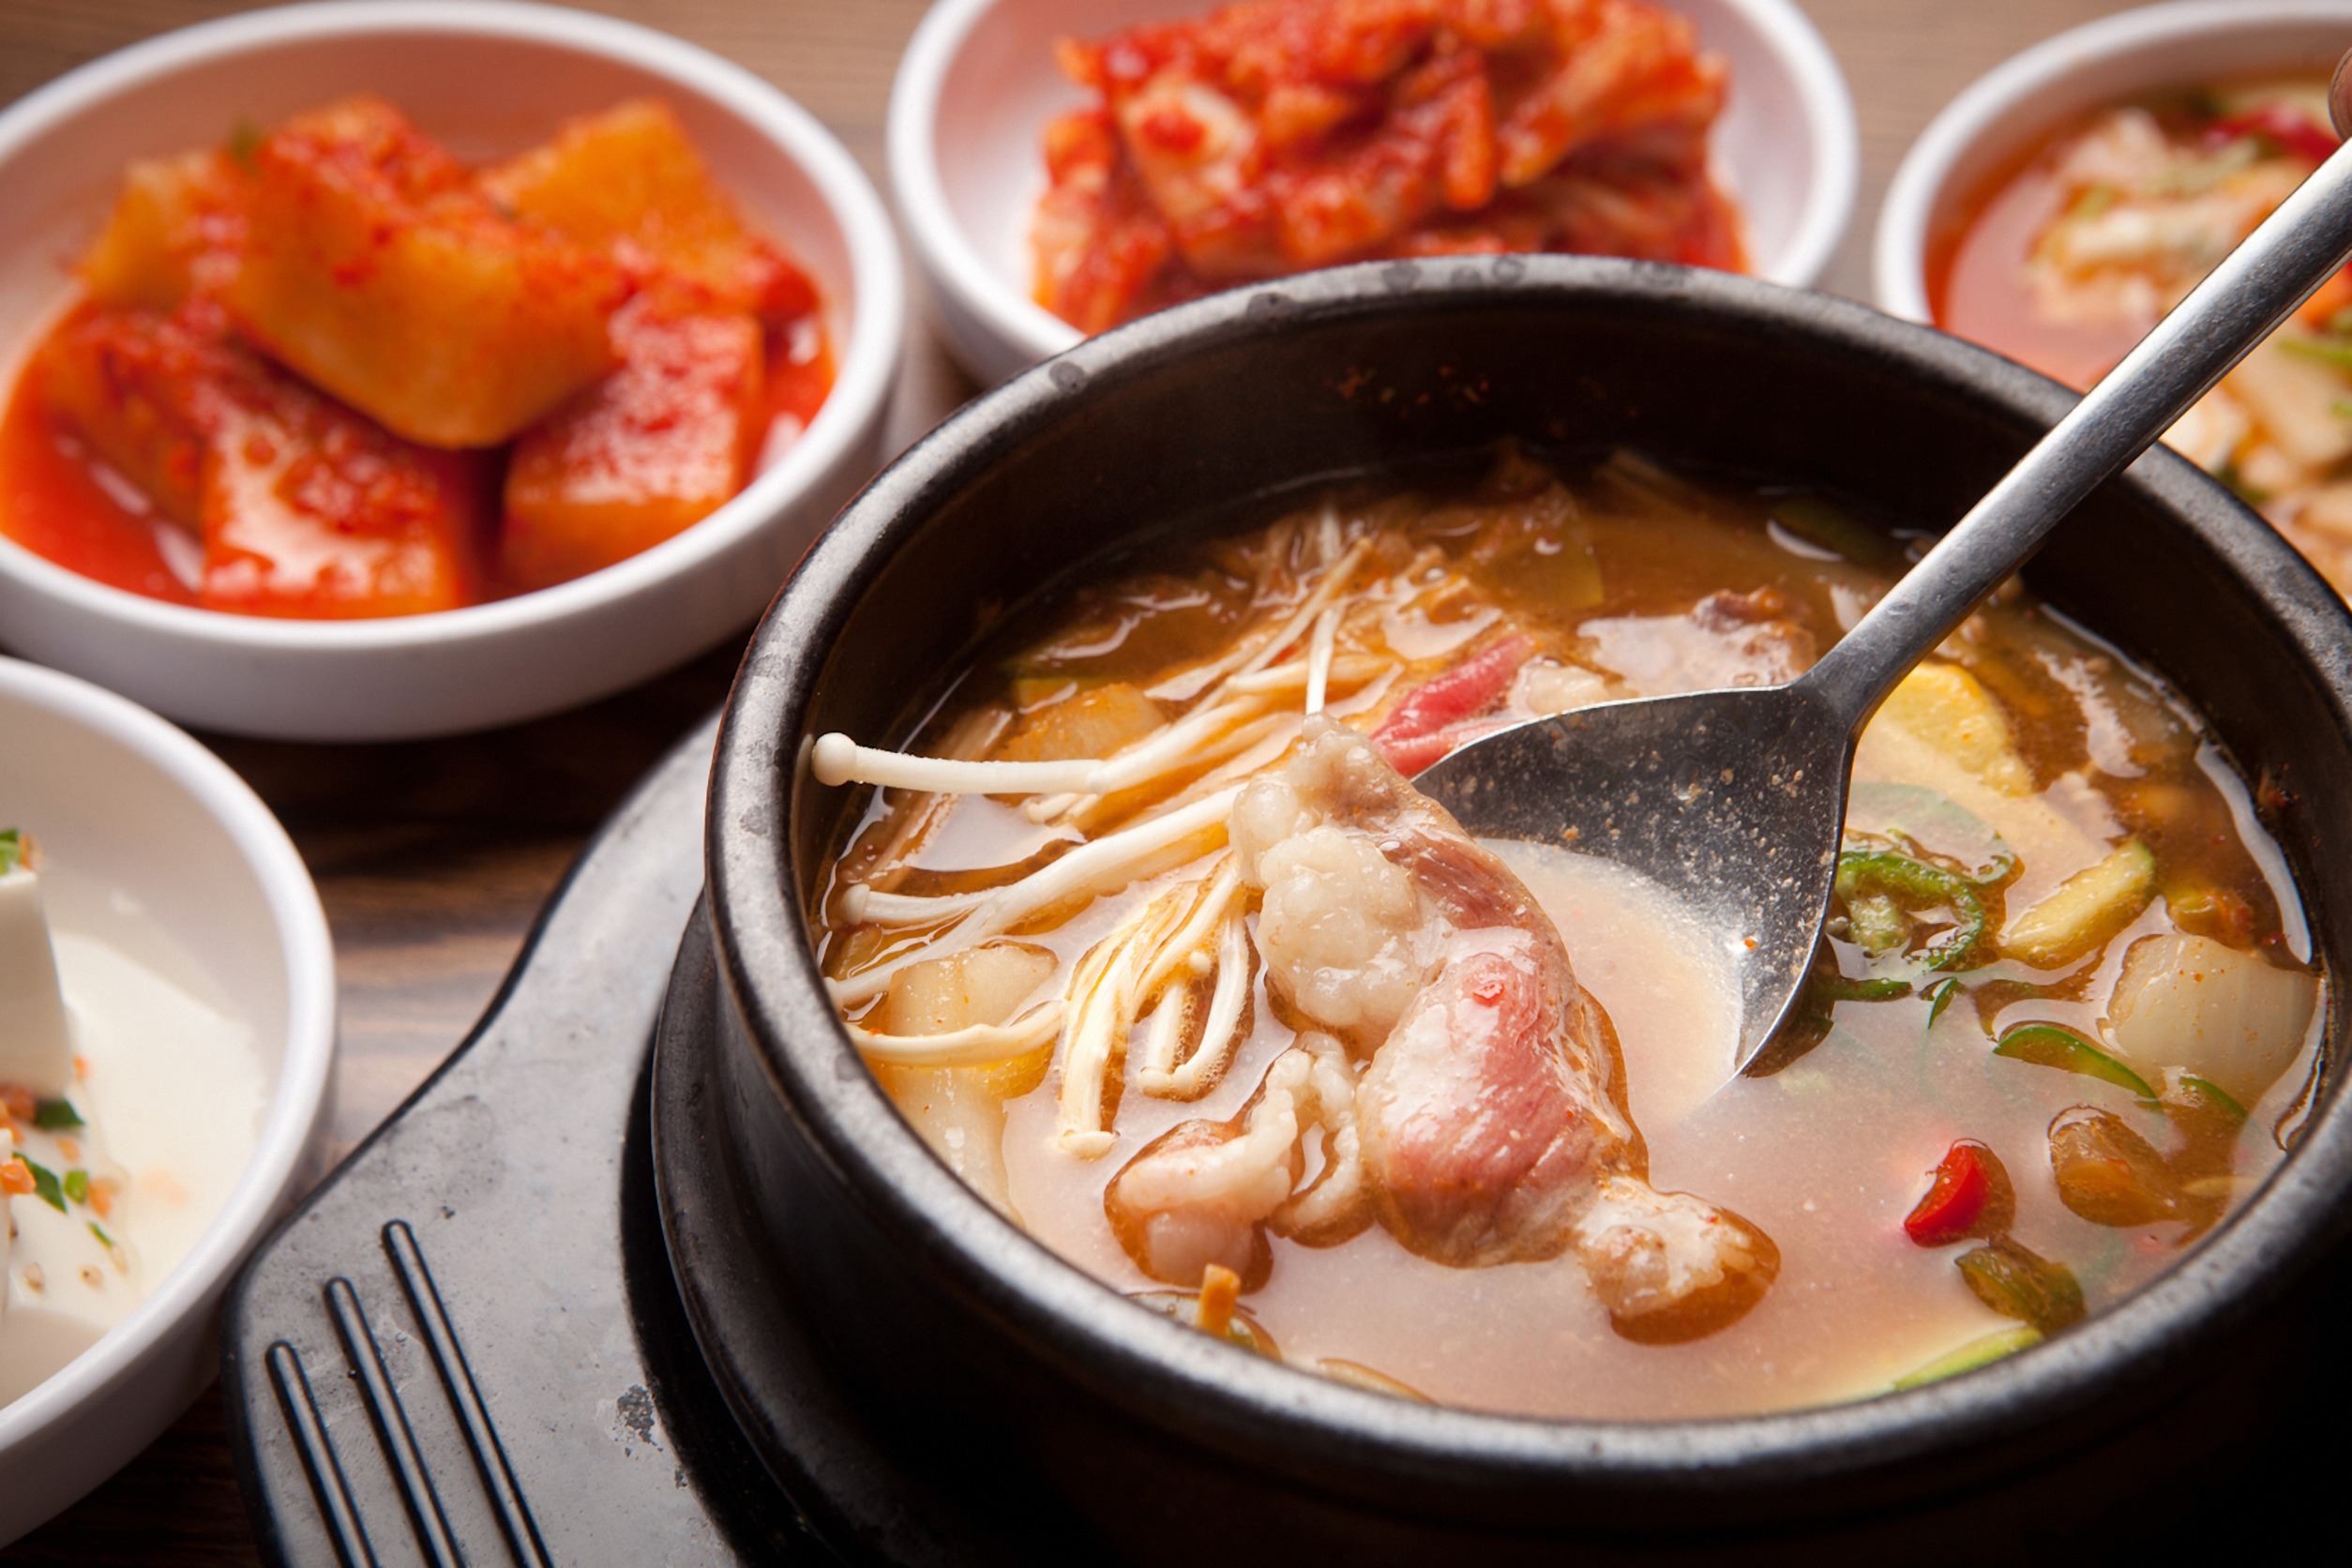 한국인의 짜게 먹는 습관, 이 증상에도 영향